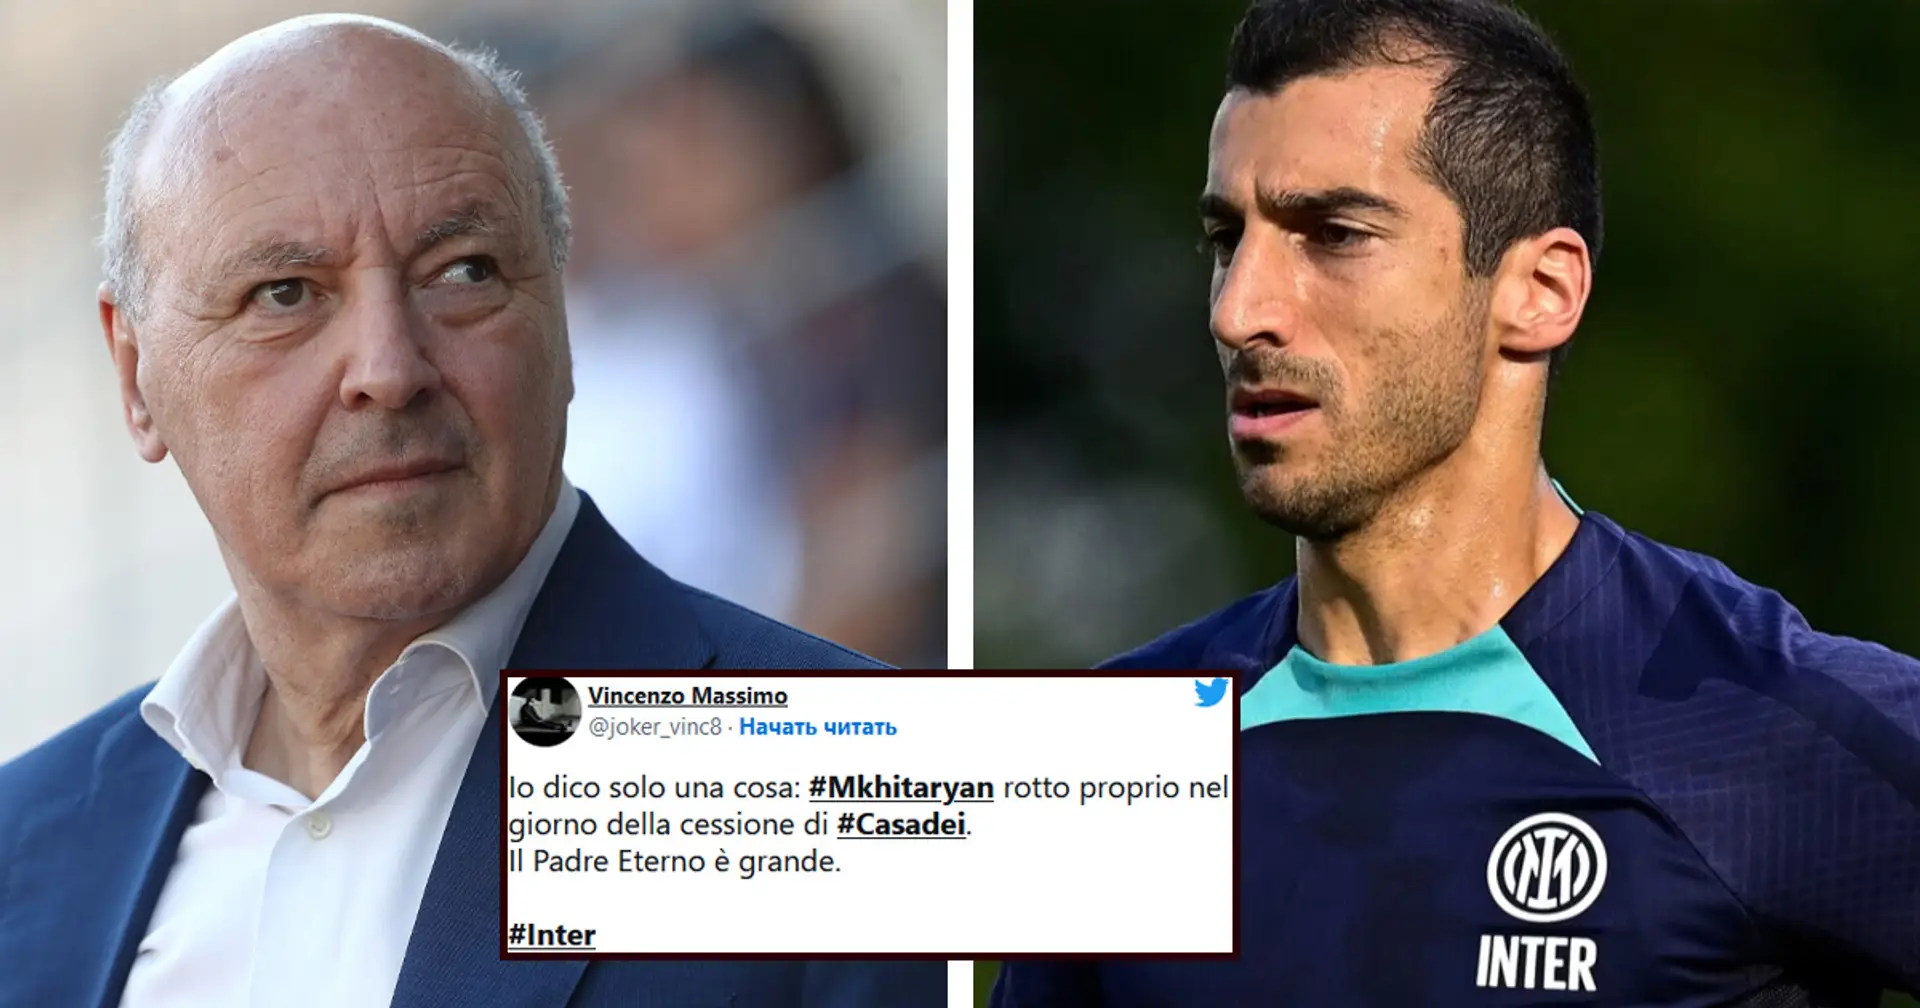 "Strapagare i vecchi non significa essere bravi": tifosi furiosi con Marotta e l'Inter dopo l'infortunio di Mkhitaryan